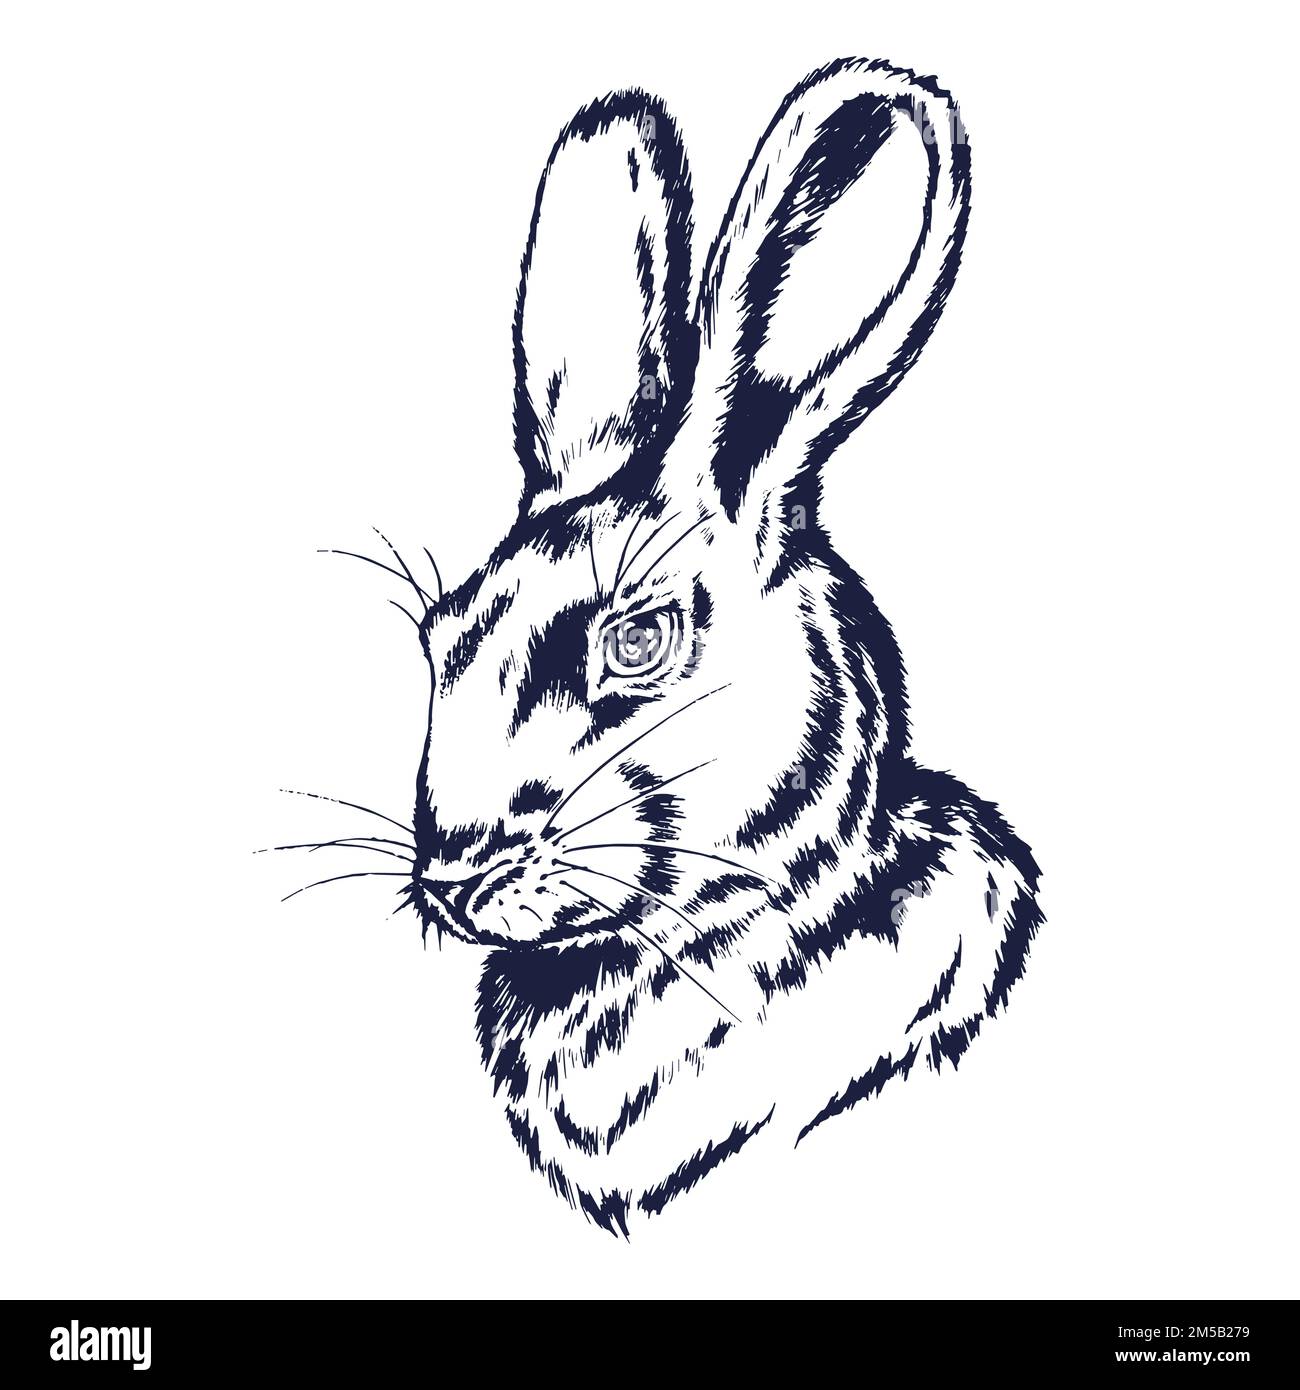 Ritratto disegnato a mano di un coniglio. Schizzo della testa di coniglio. Coniglio incorniciato con brushstroke e fiori di iride. Illustrazione Vettoriale